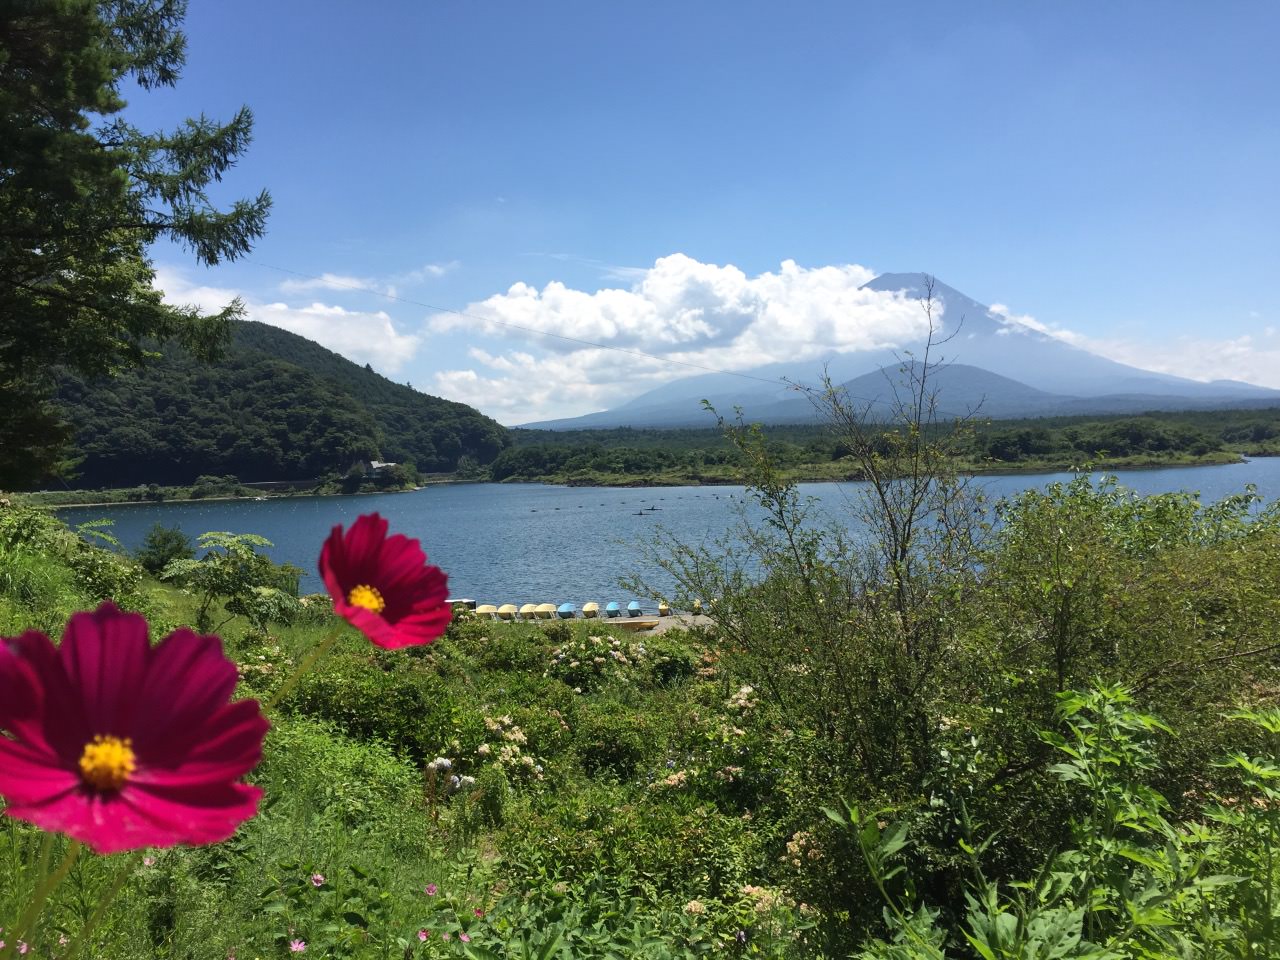 Lake Shoji